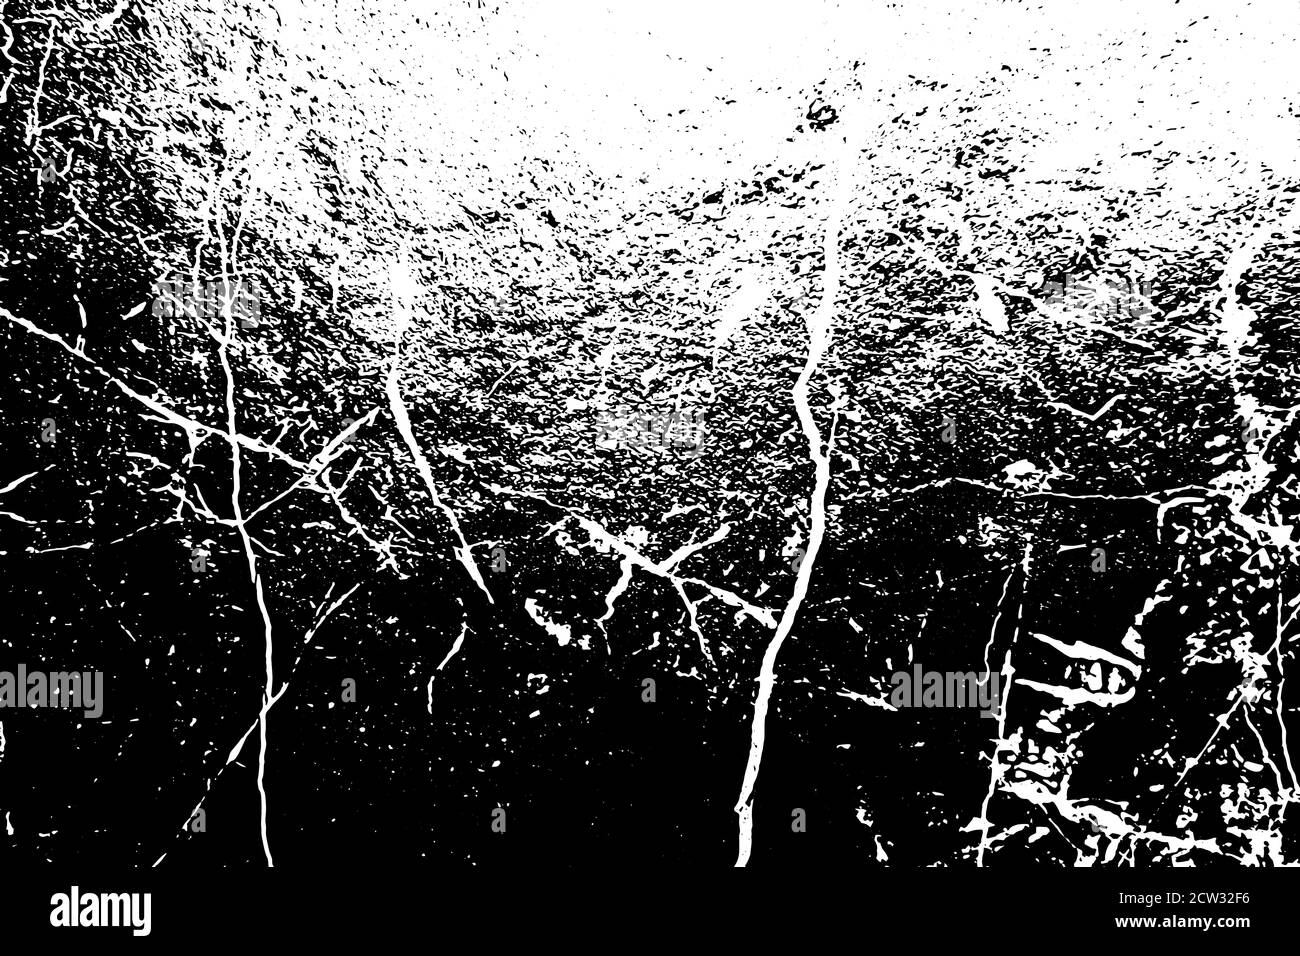 Scratched Grunge Urban Hintergrund Textur Vektor. Alternde Zerkratzte Wand.Monochrome Textur Stock Vektor